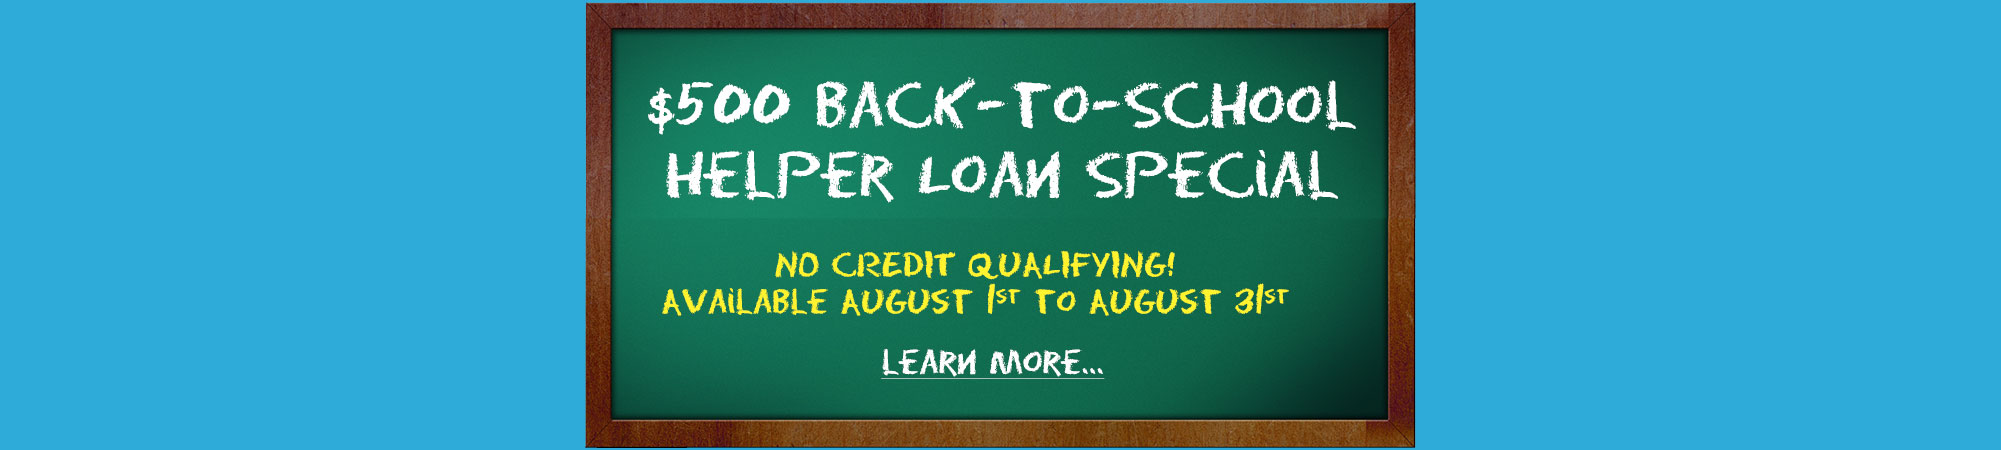 $500 Back-to-School Helper Loan Special